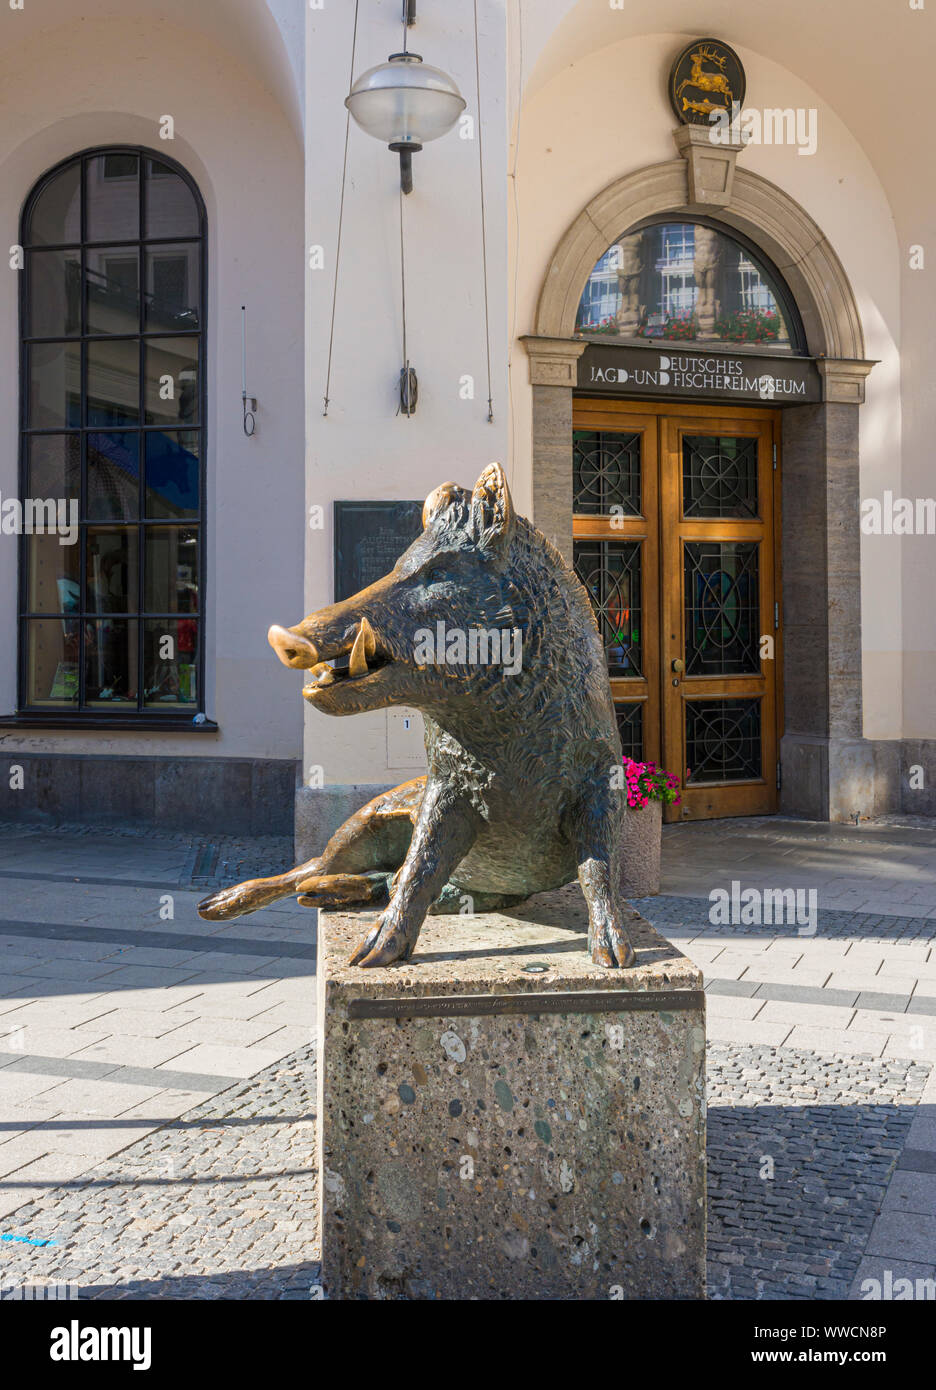 Sanglier en bronze statue à l'extérieur du Musée de la chasse et de la pêche, Munich, Allemagne Banque D'Images